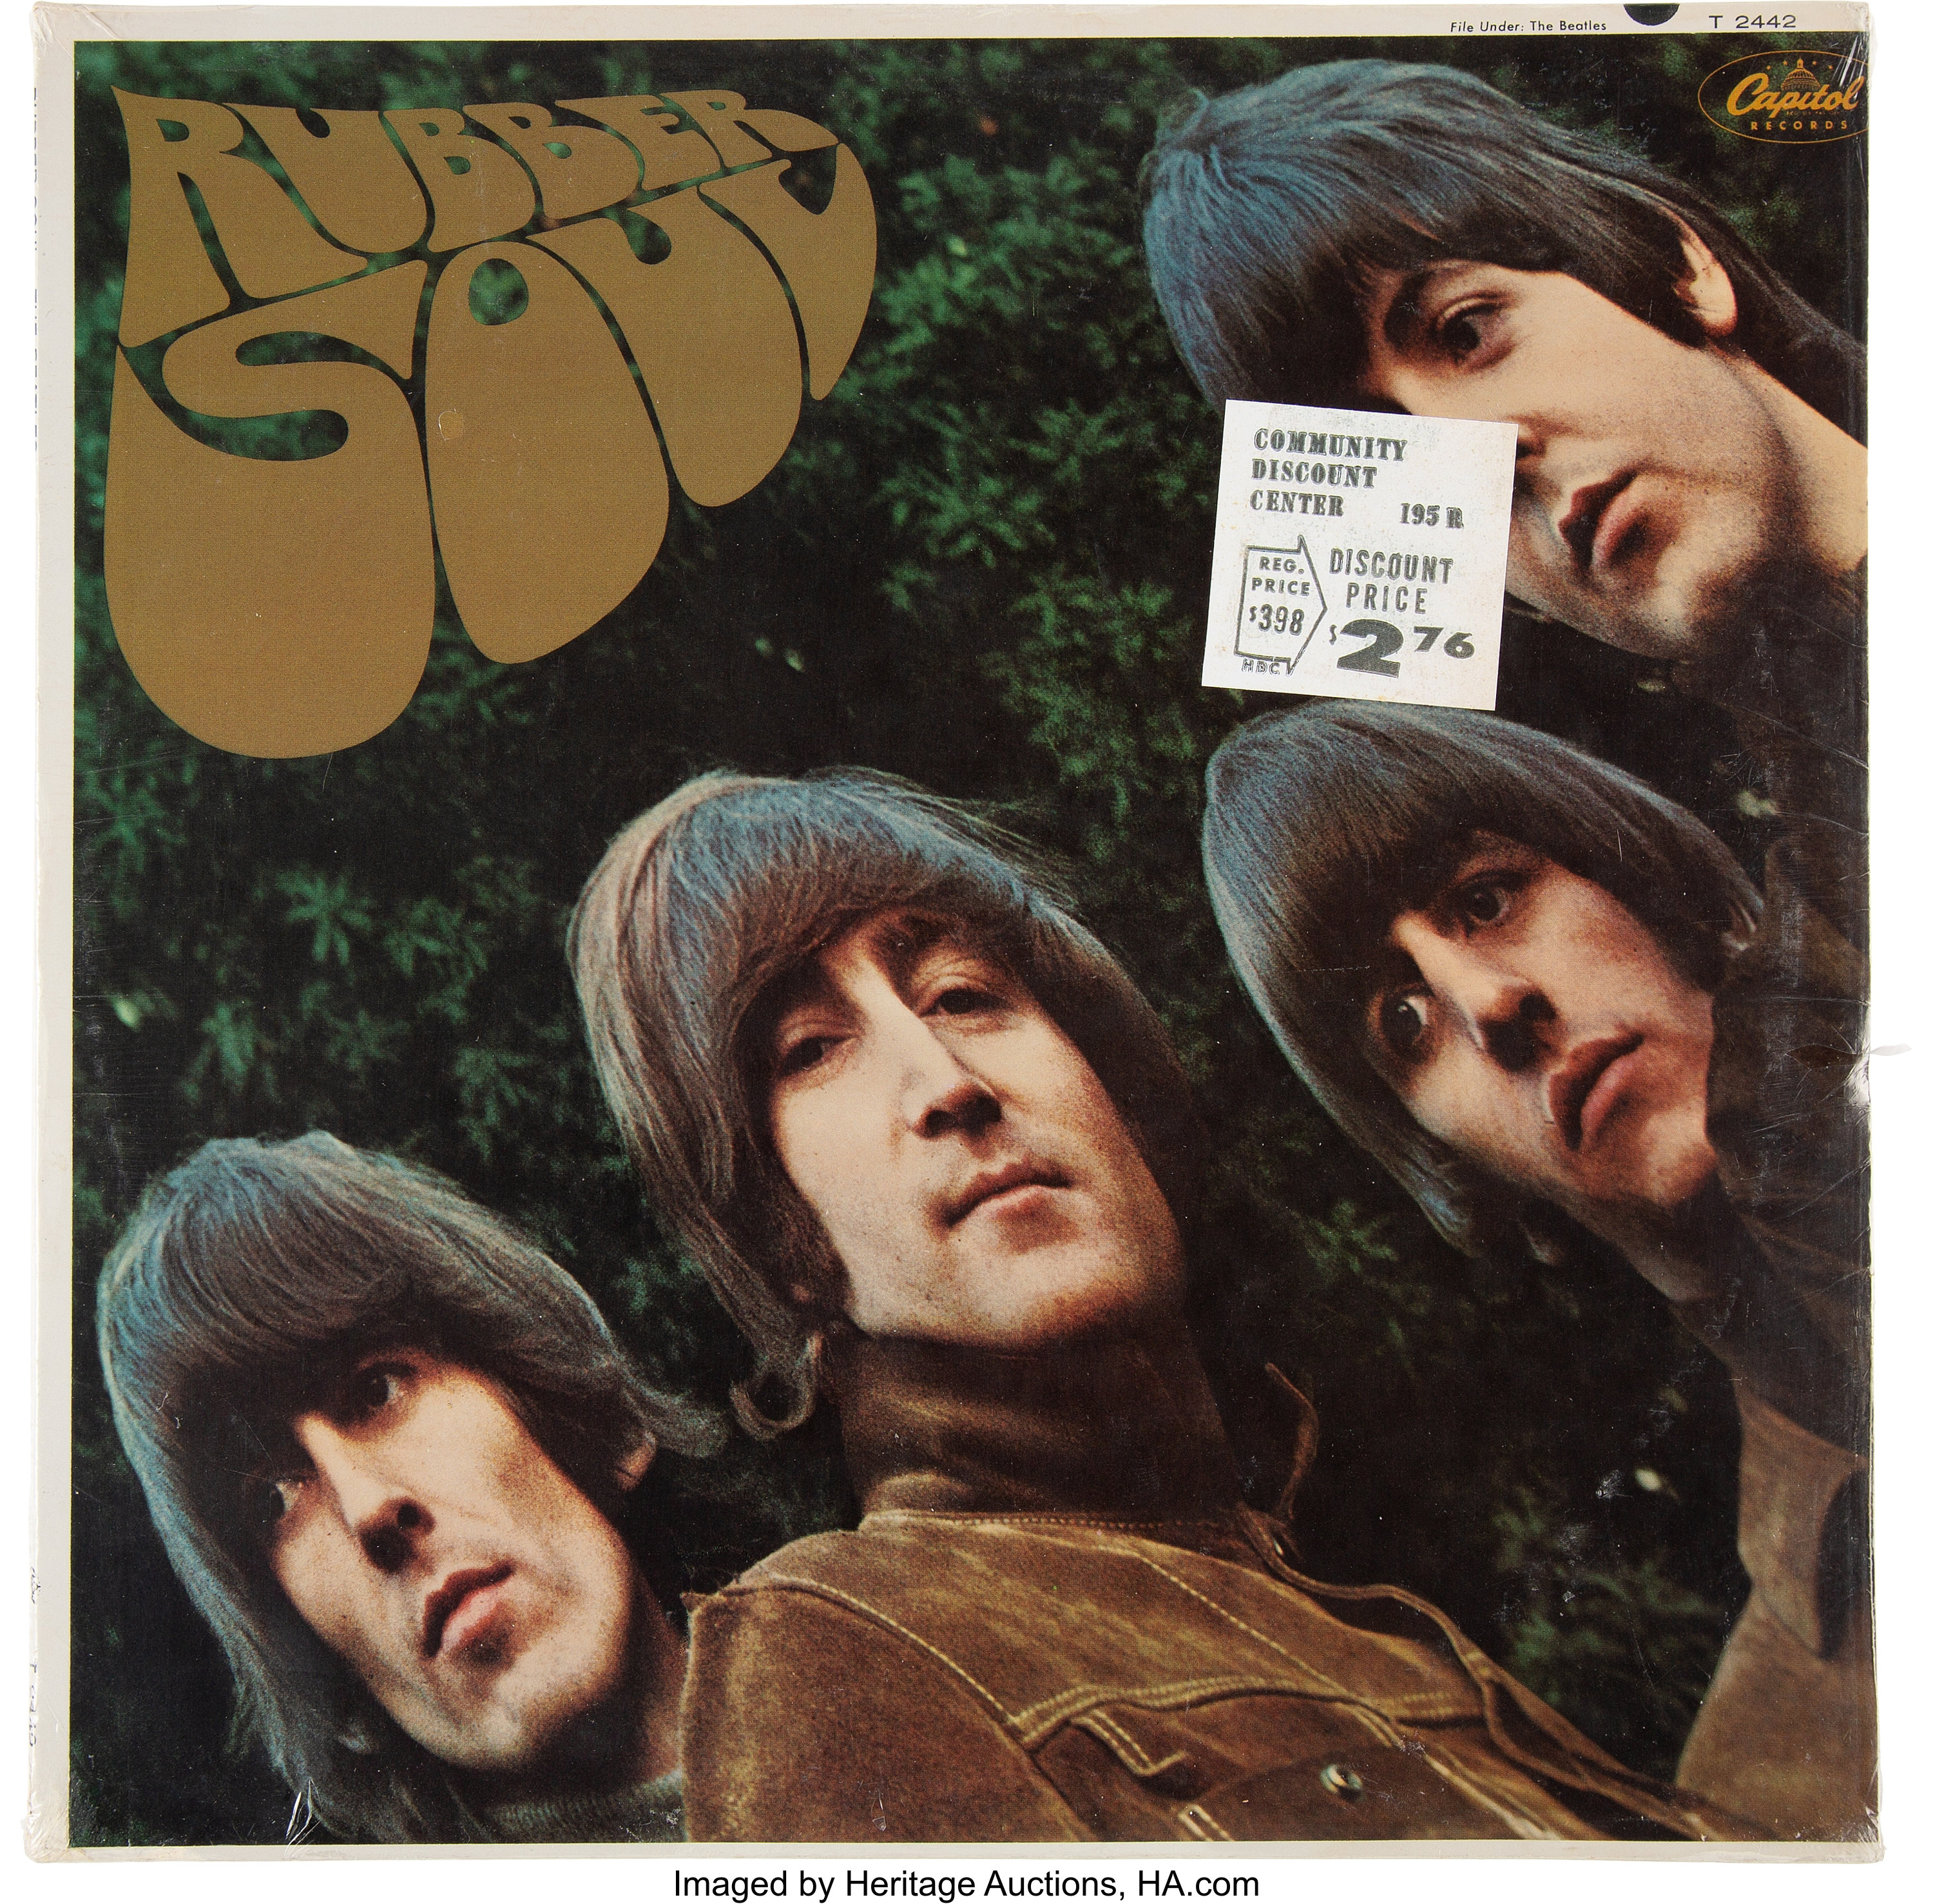 The Beatles Rubber Soul Sealed Mono LP (Capitol T 2442, 1965